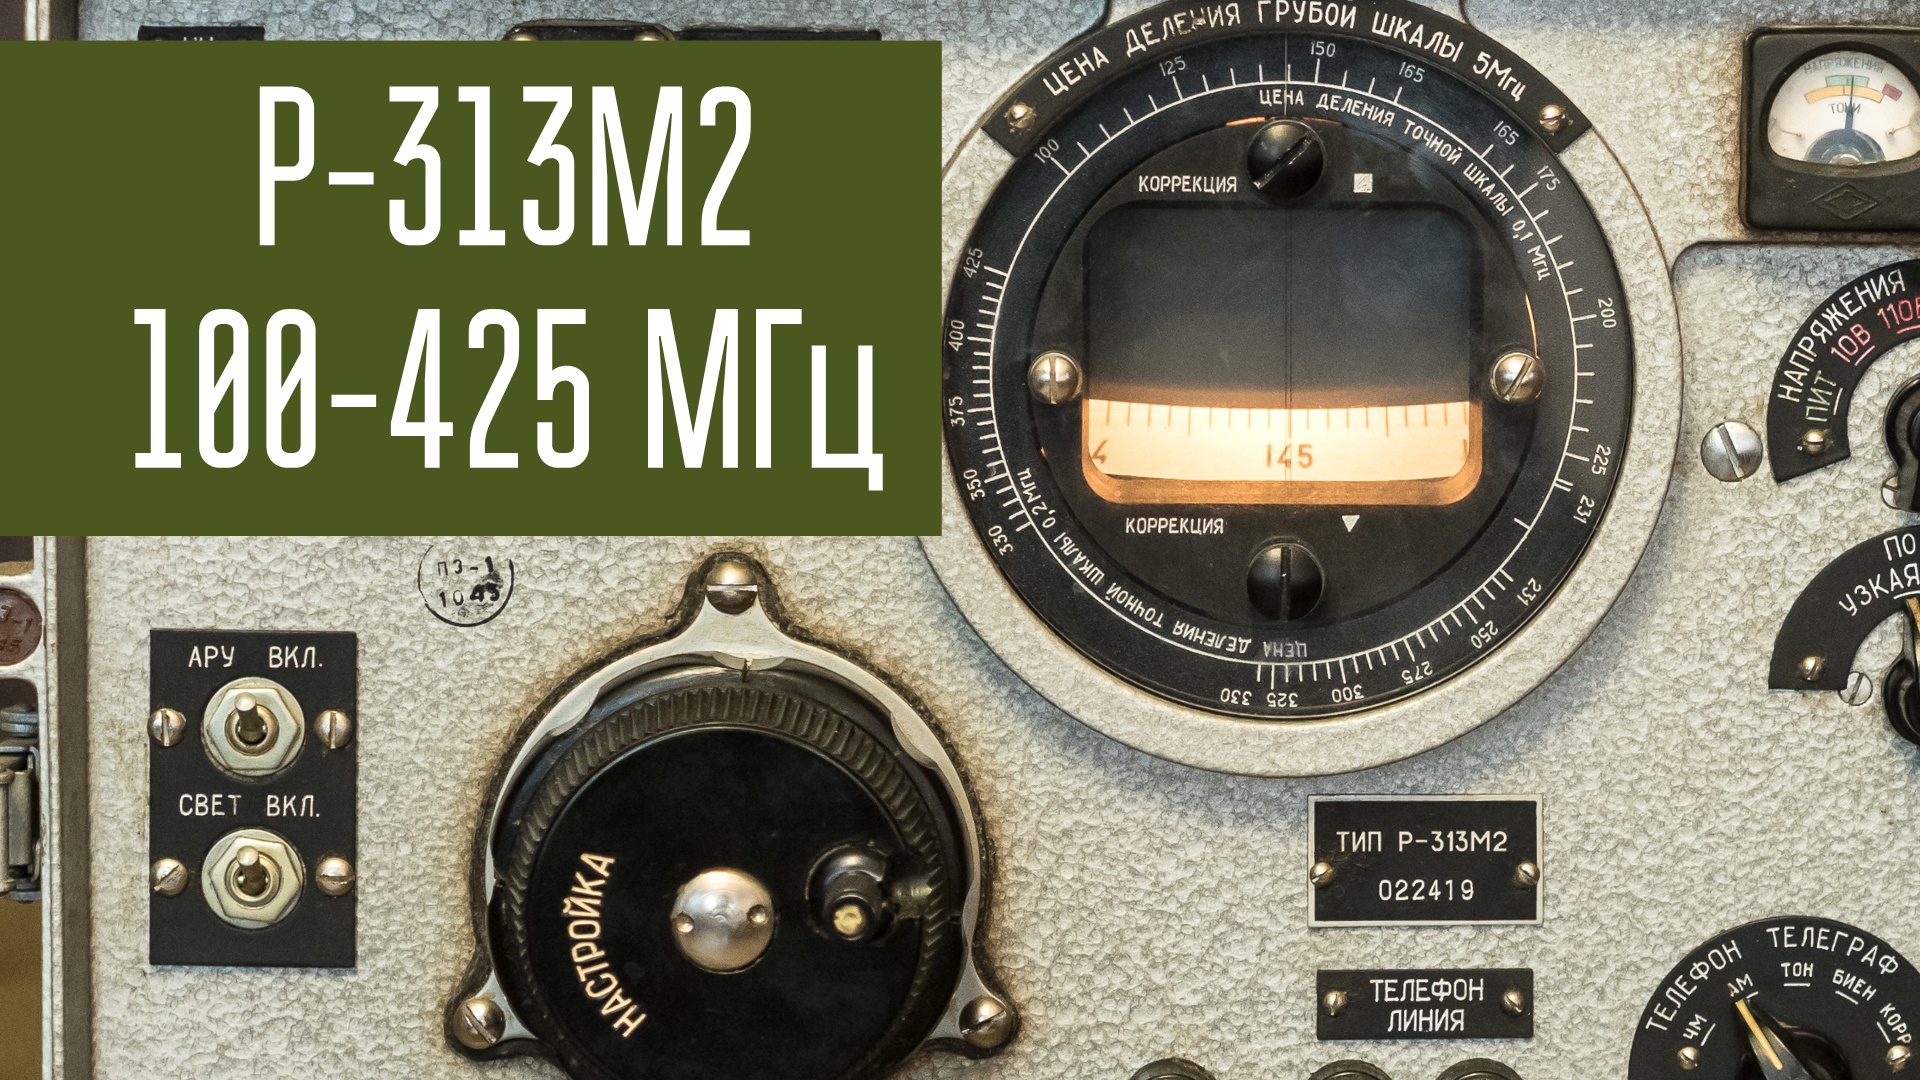 Р-313М2 приёмник УКВ до 425 МГц из СССР 1970-х годов. Слушаем эфир, смотрим внутренности.